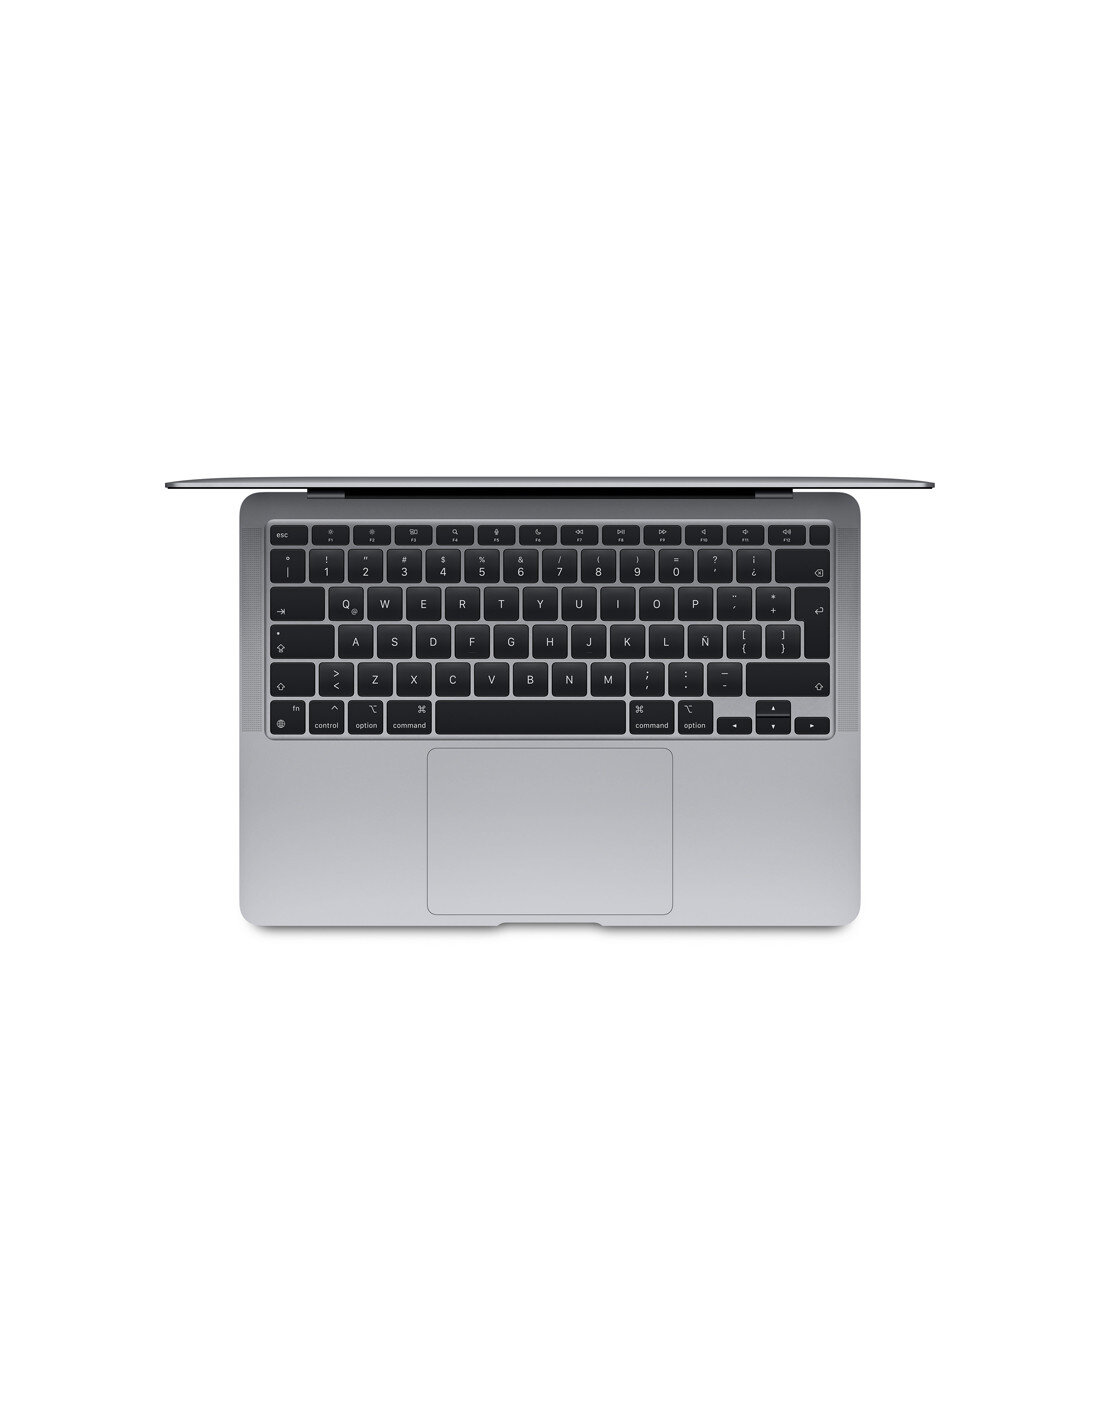 macbook-air-13-m1-2020-8-core-cpu-256-gb-space-gray